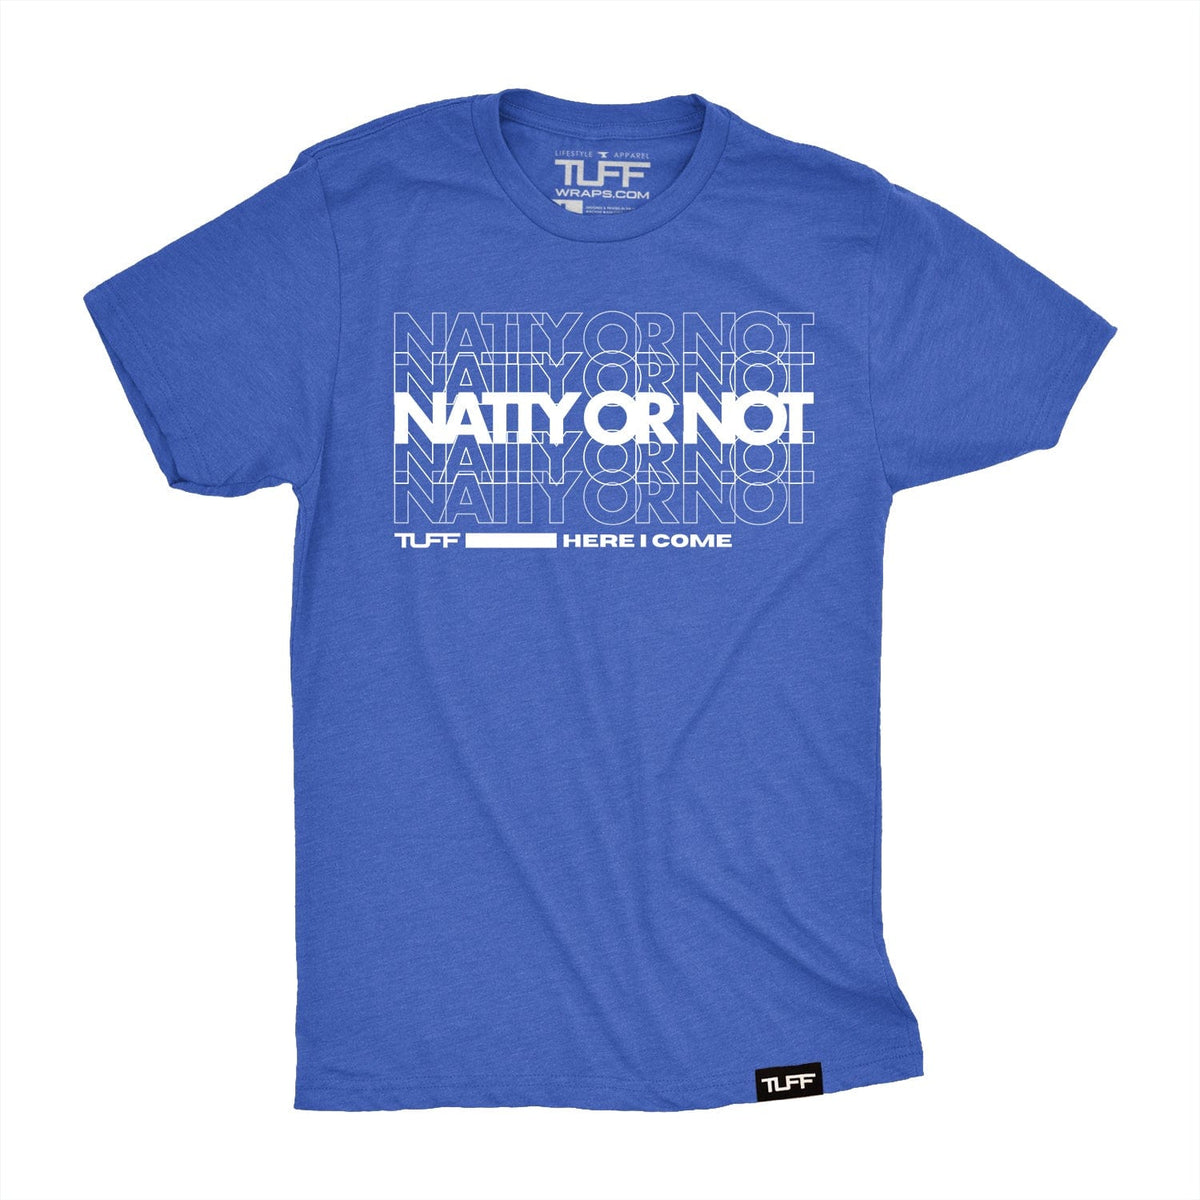 Natty Or Not Tee T-shirt